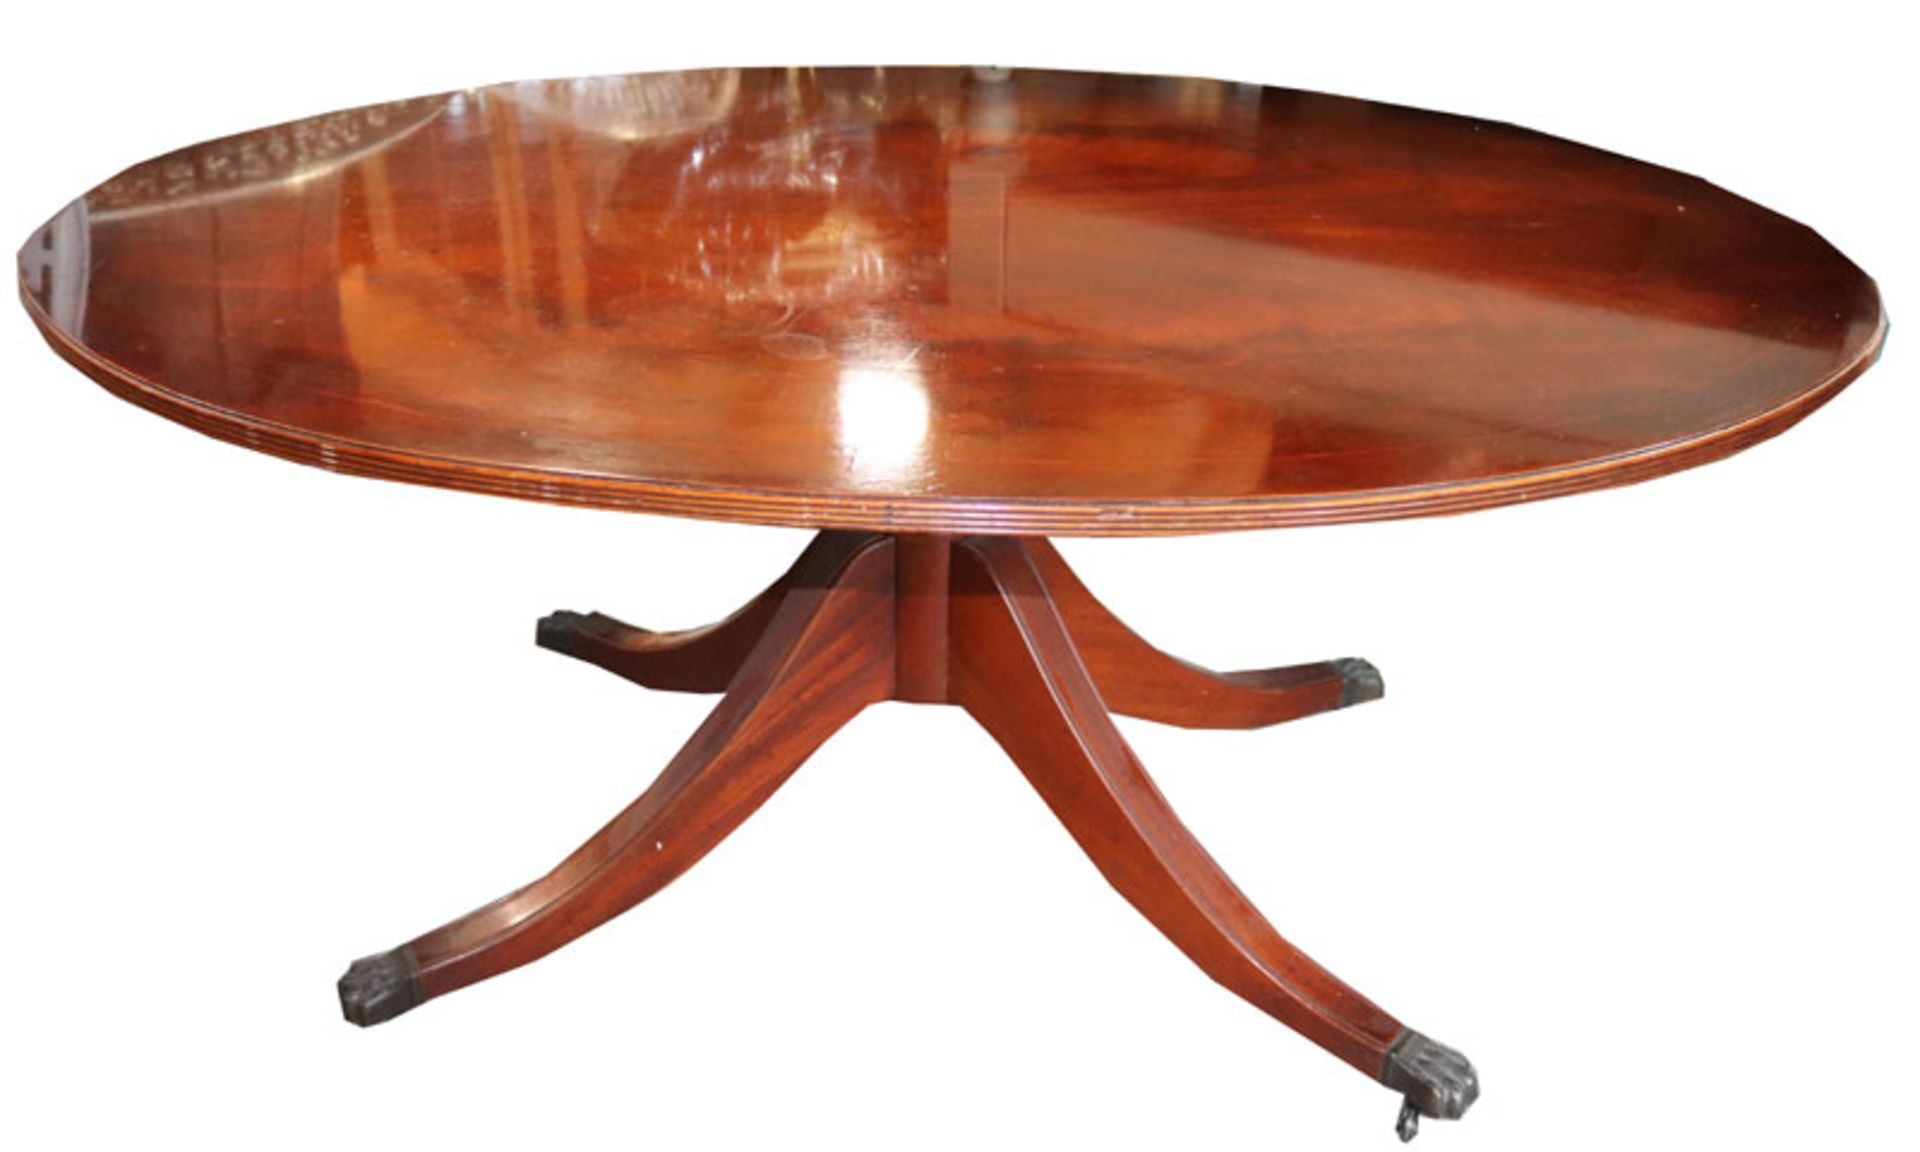 Ovaler Tisch auf Mittelfuß mit 4 Beinen, Löwentatzen auf Rollen, England, H 54 cm, B 120 cm, T 75